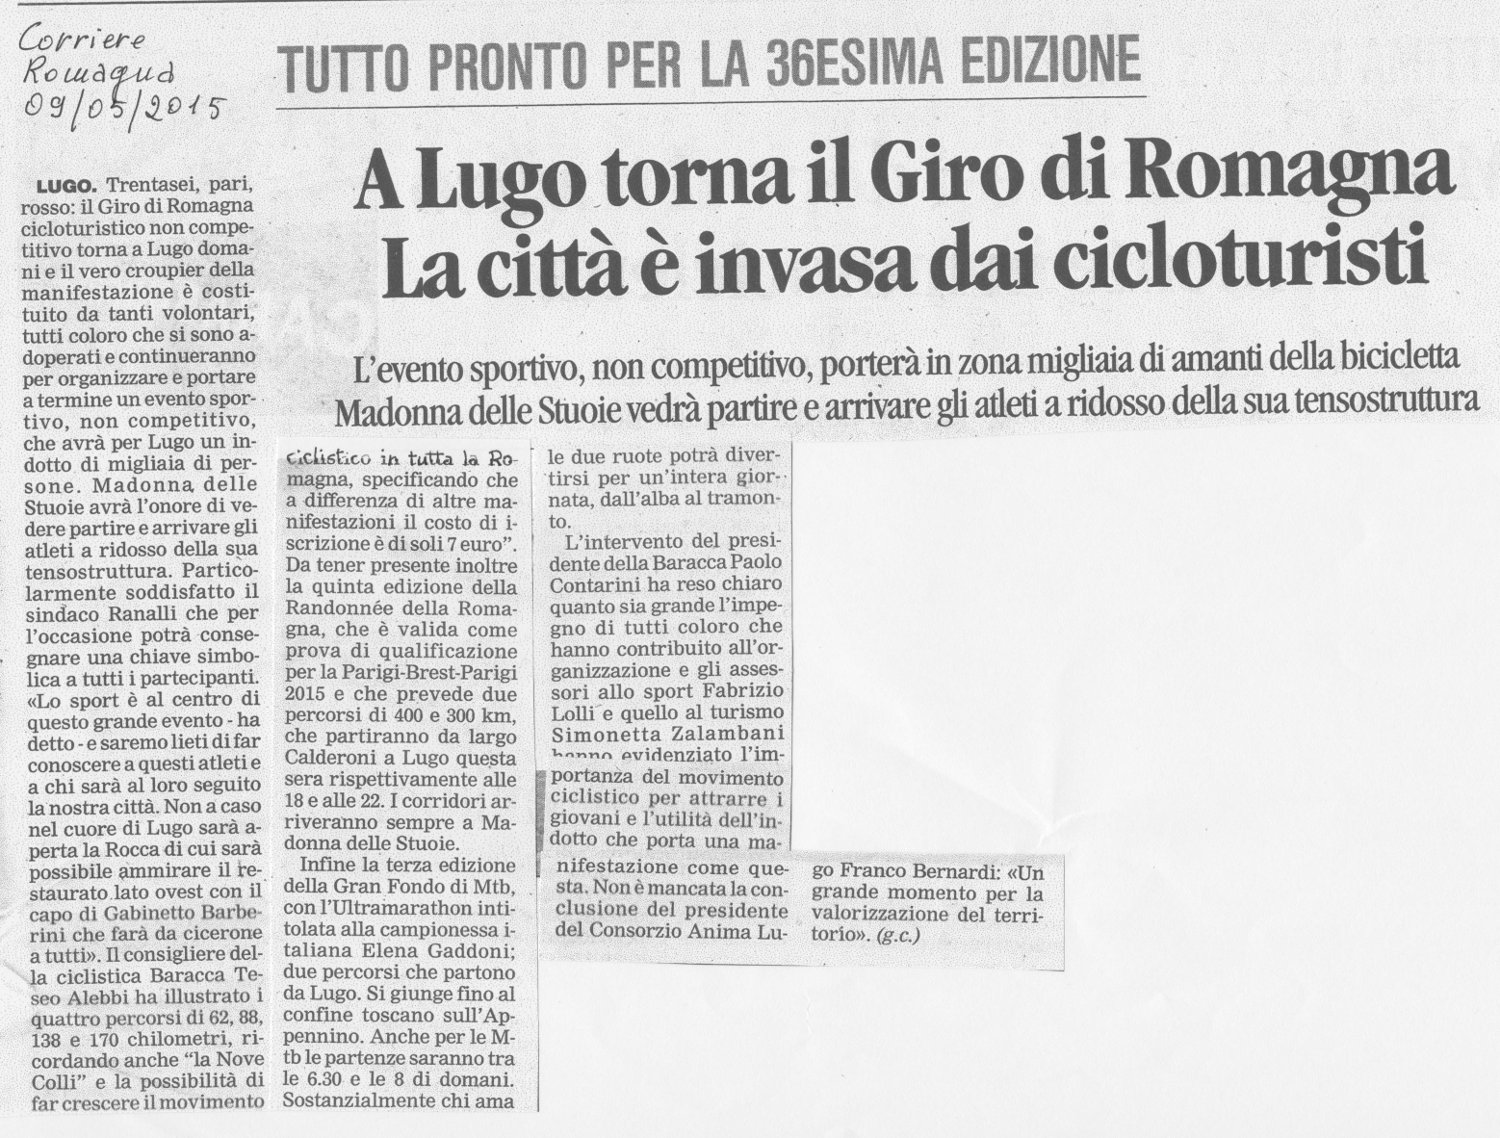 09 05 2015 Corriere Romagna